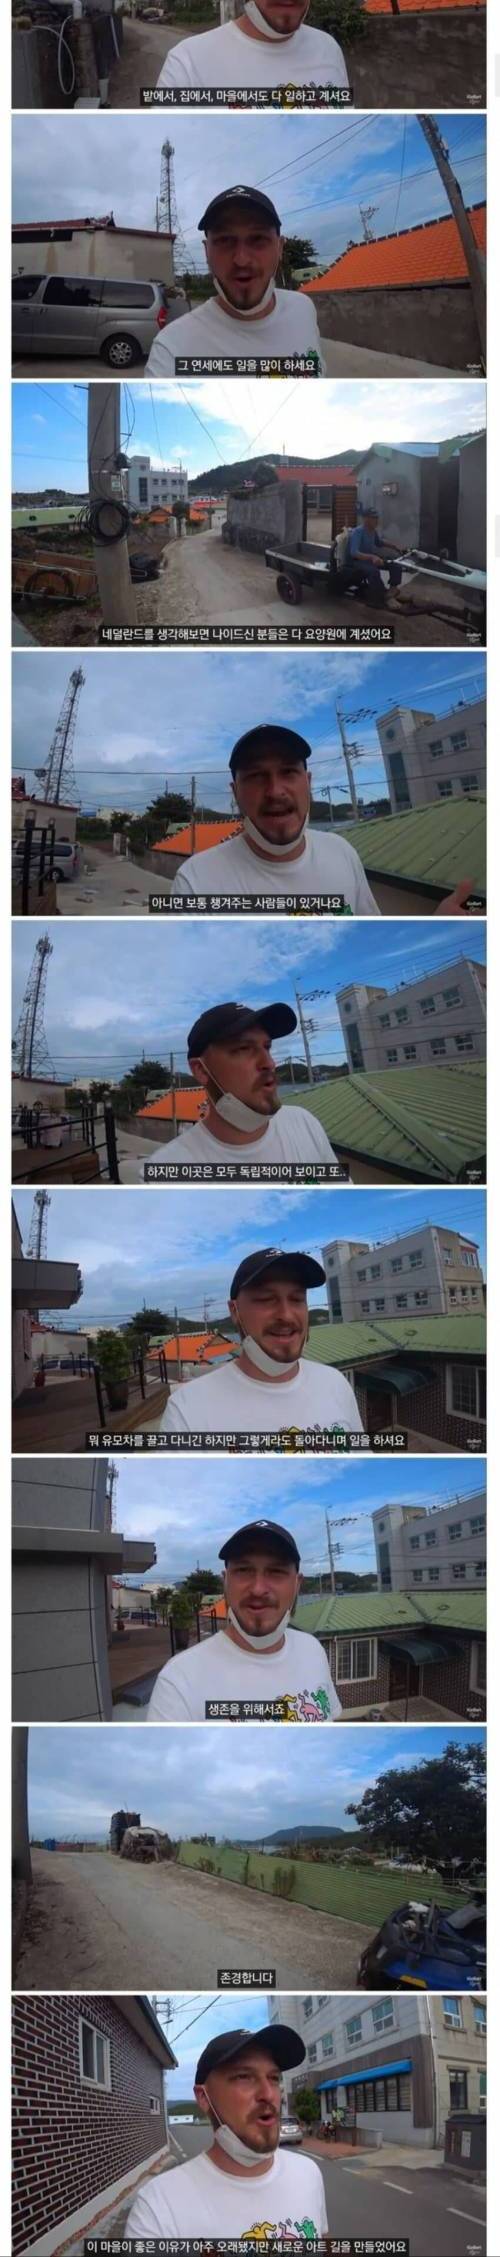 [스압] 한국의 시골을 여행중인 외국인 유튜버